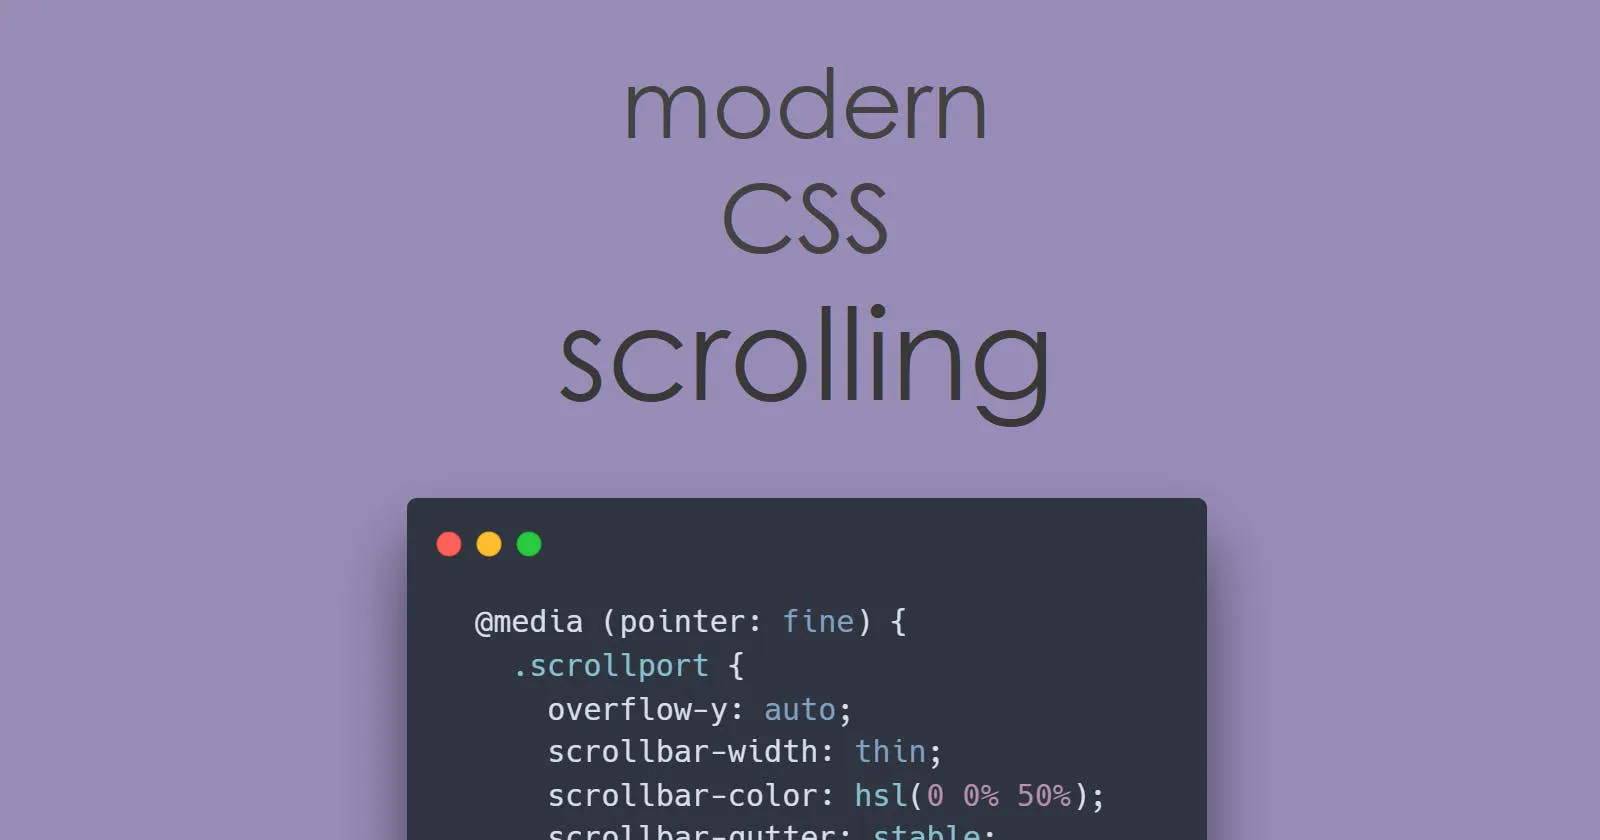 Melhor rolagem pelo CSS moderno